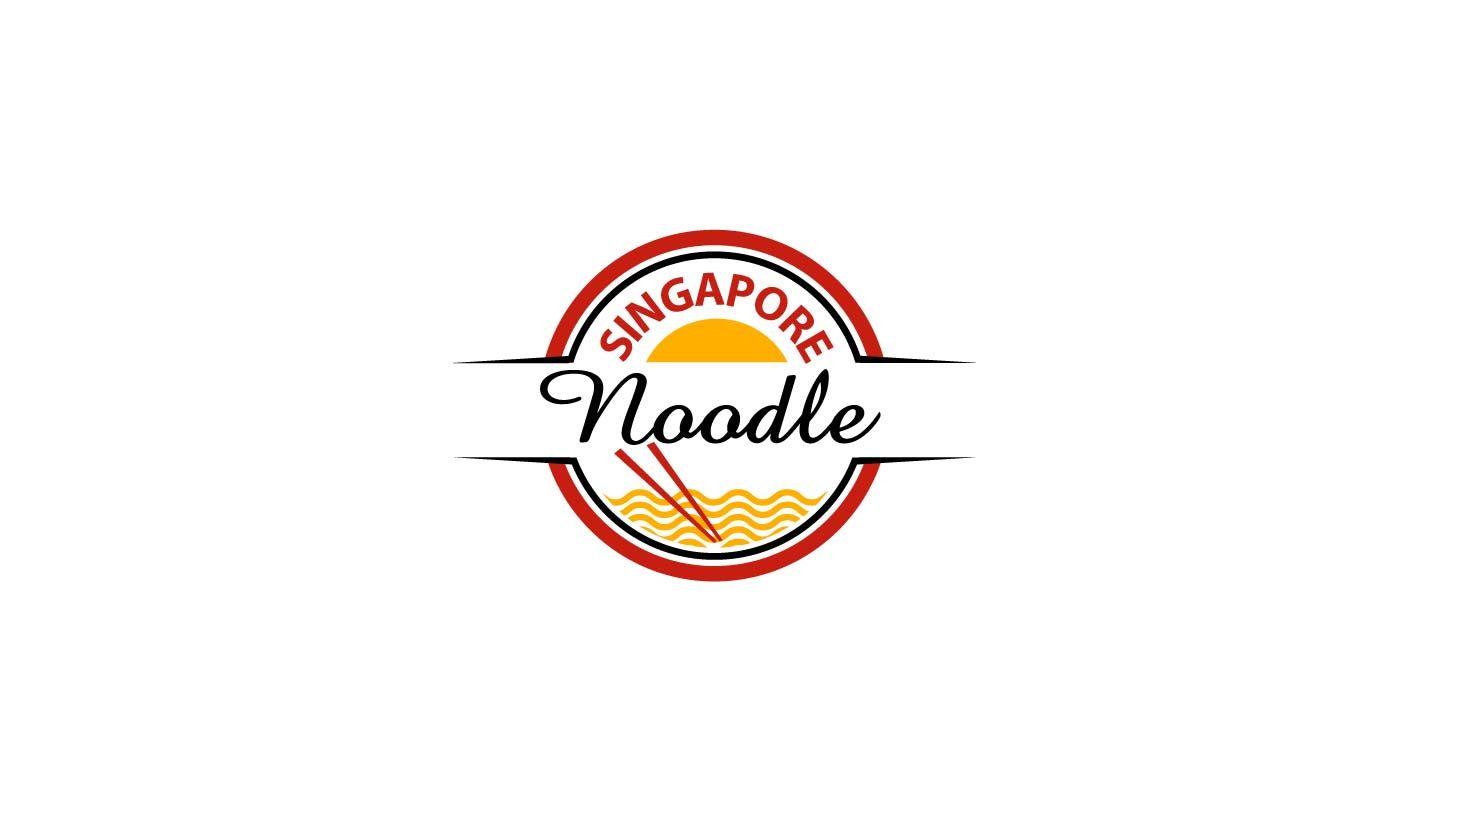 Noodle Logo - Logo Design for Singapore Noodle by parshdelhi | Design #3464531